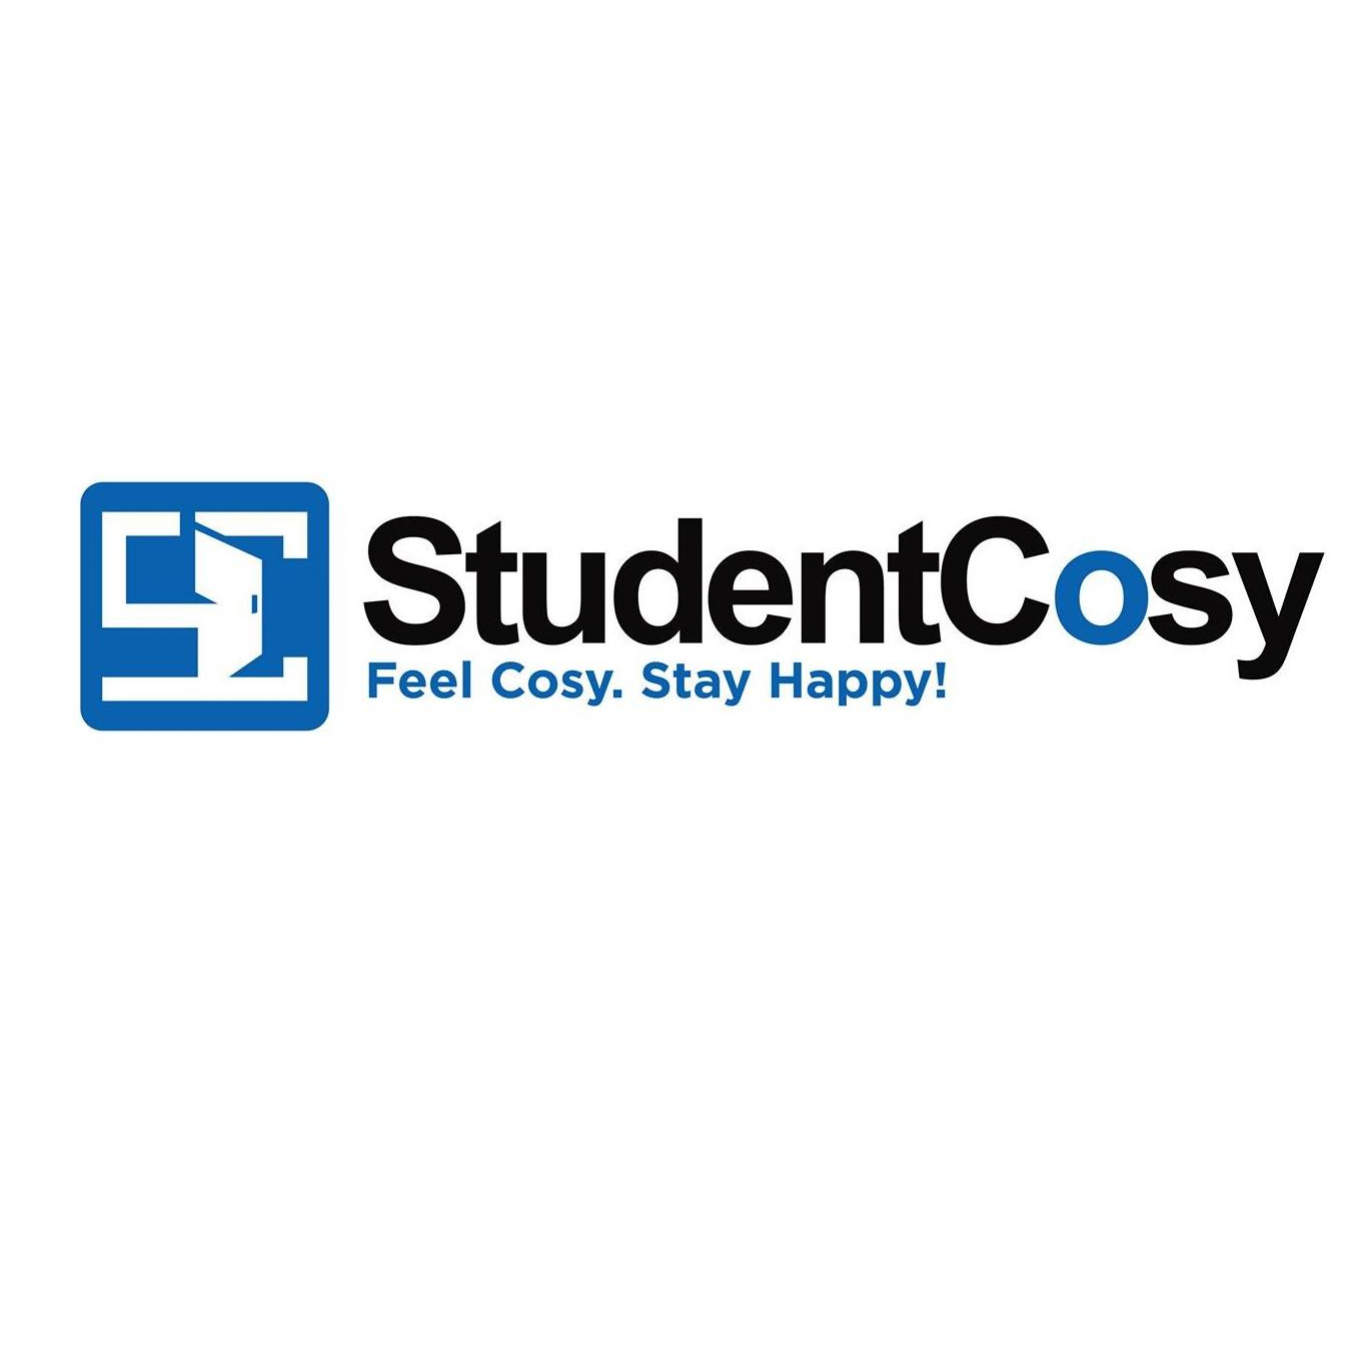 Studentcosy123